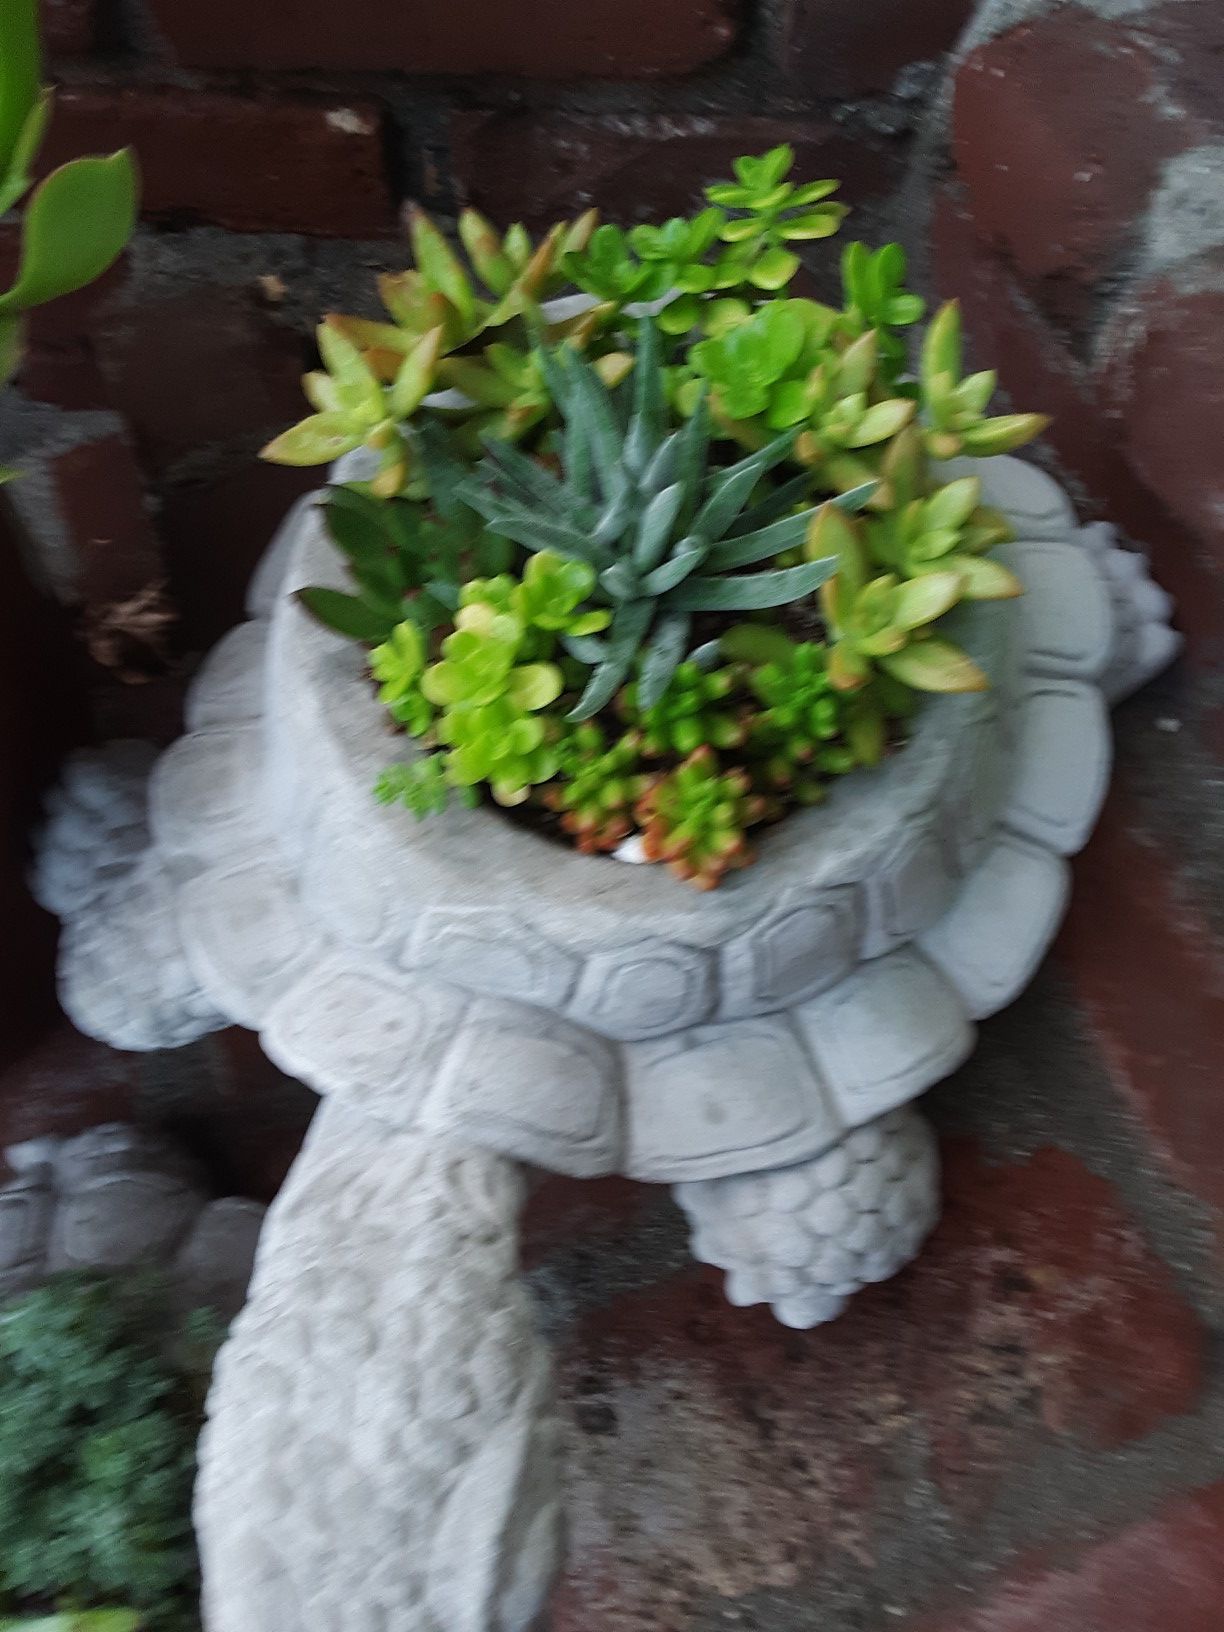 18" cement turtle planters with succulent plants $21 each